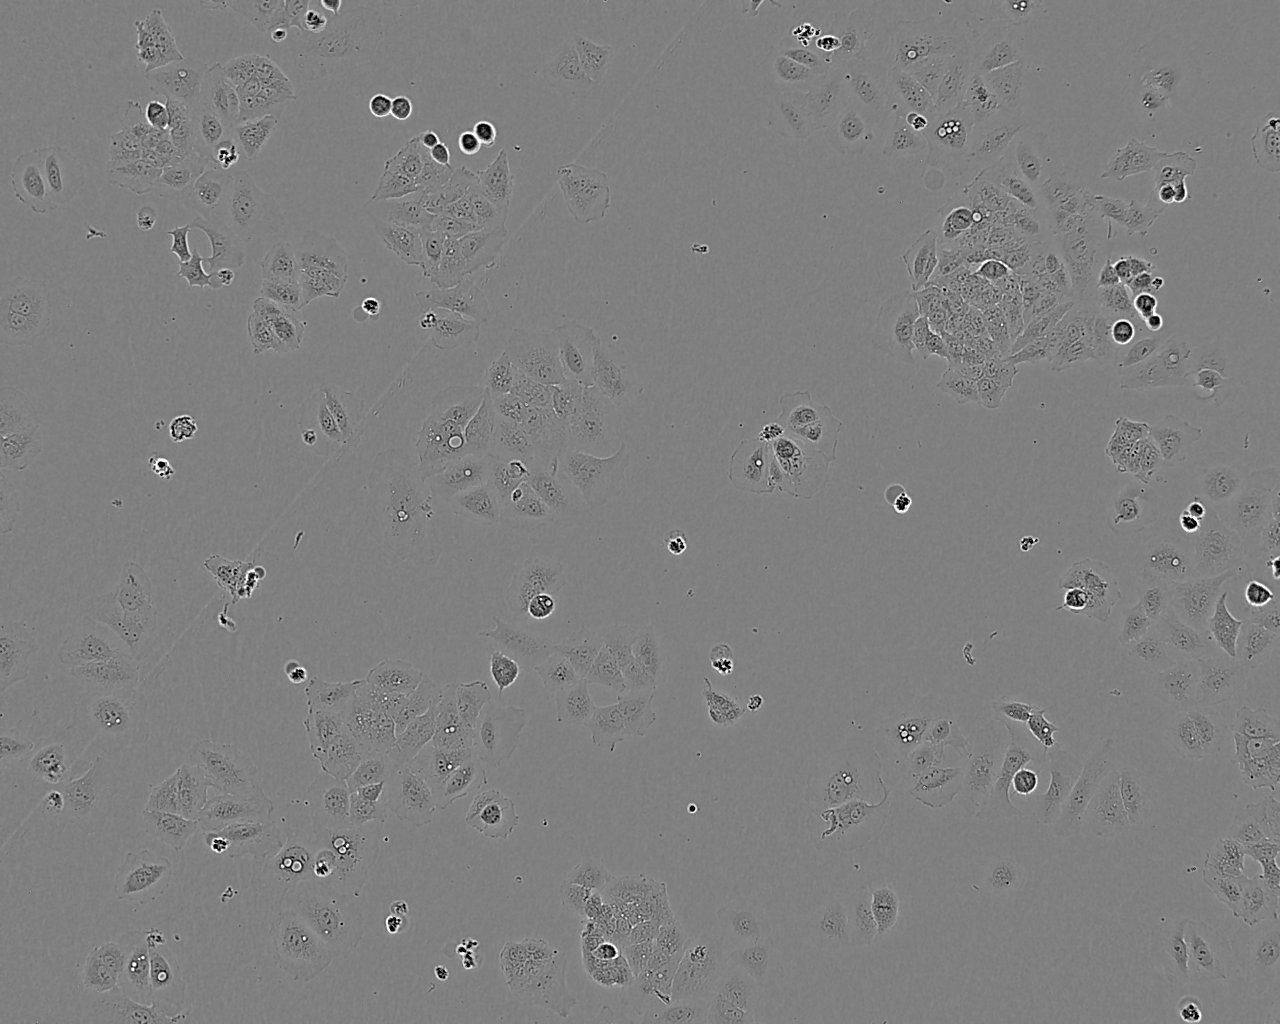 G-402 Cell:人肾平滑肌瘤细胞系